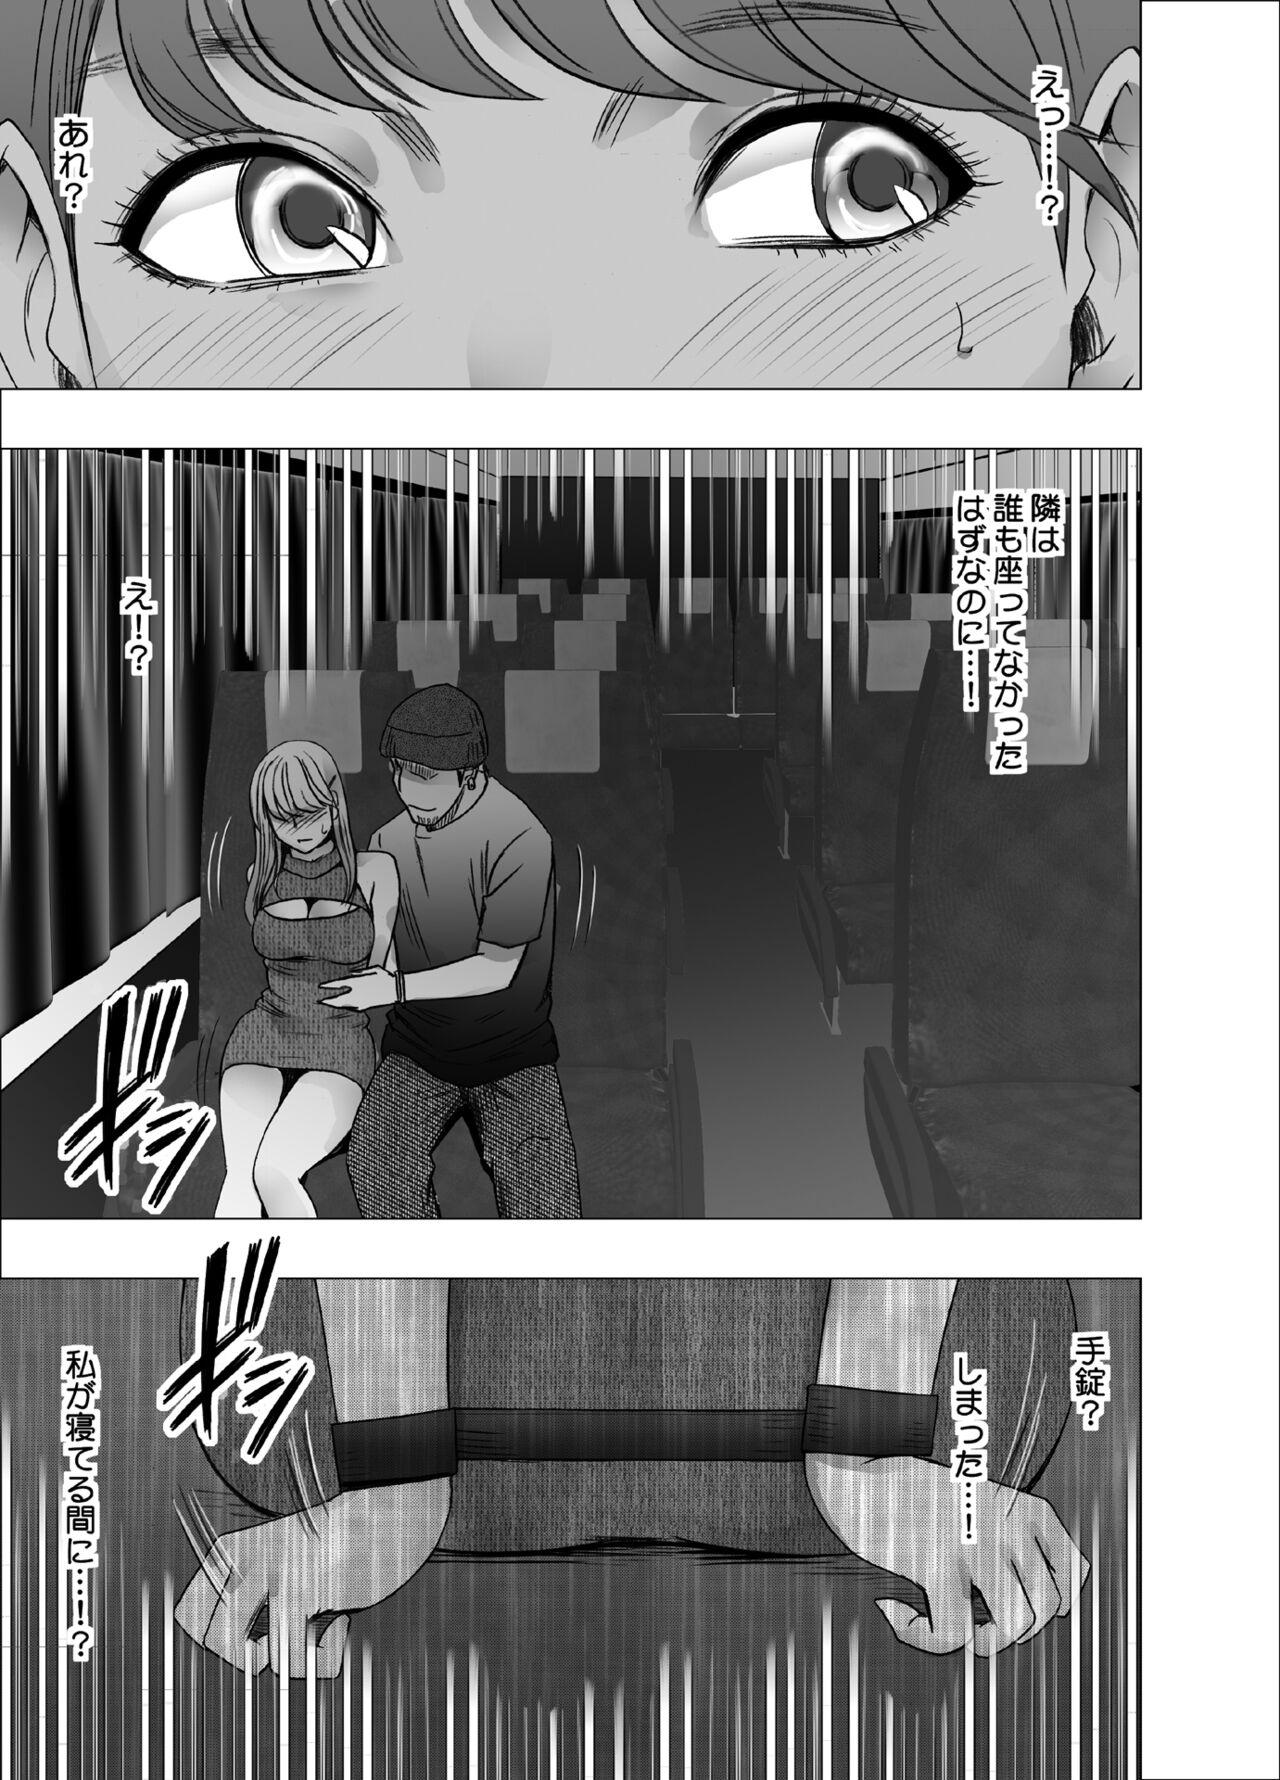 Ikillitts Chikubi de Sokuiki suru Joshidaisei 4 - Original Flash - Page 8